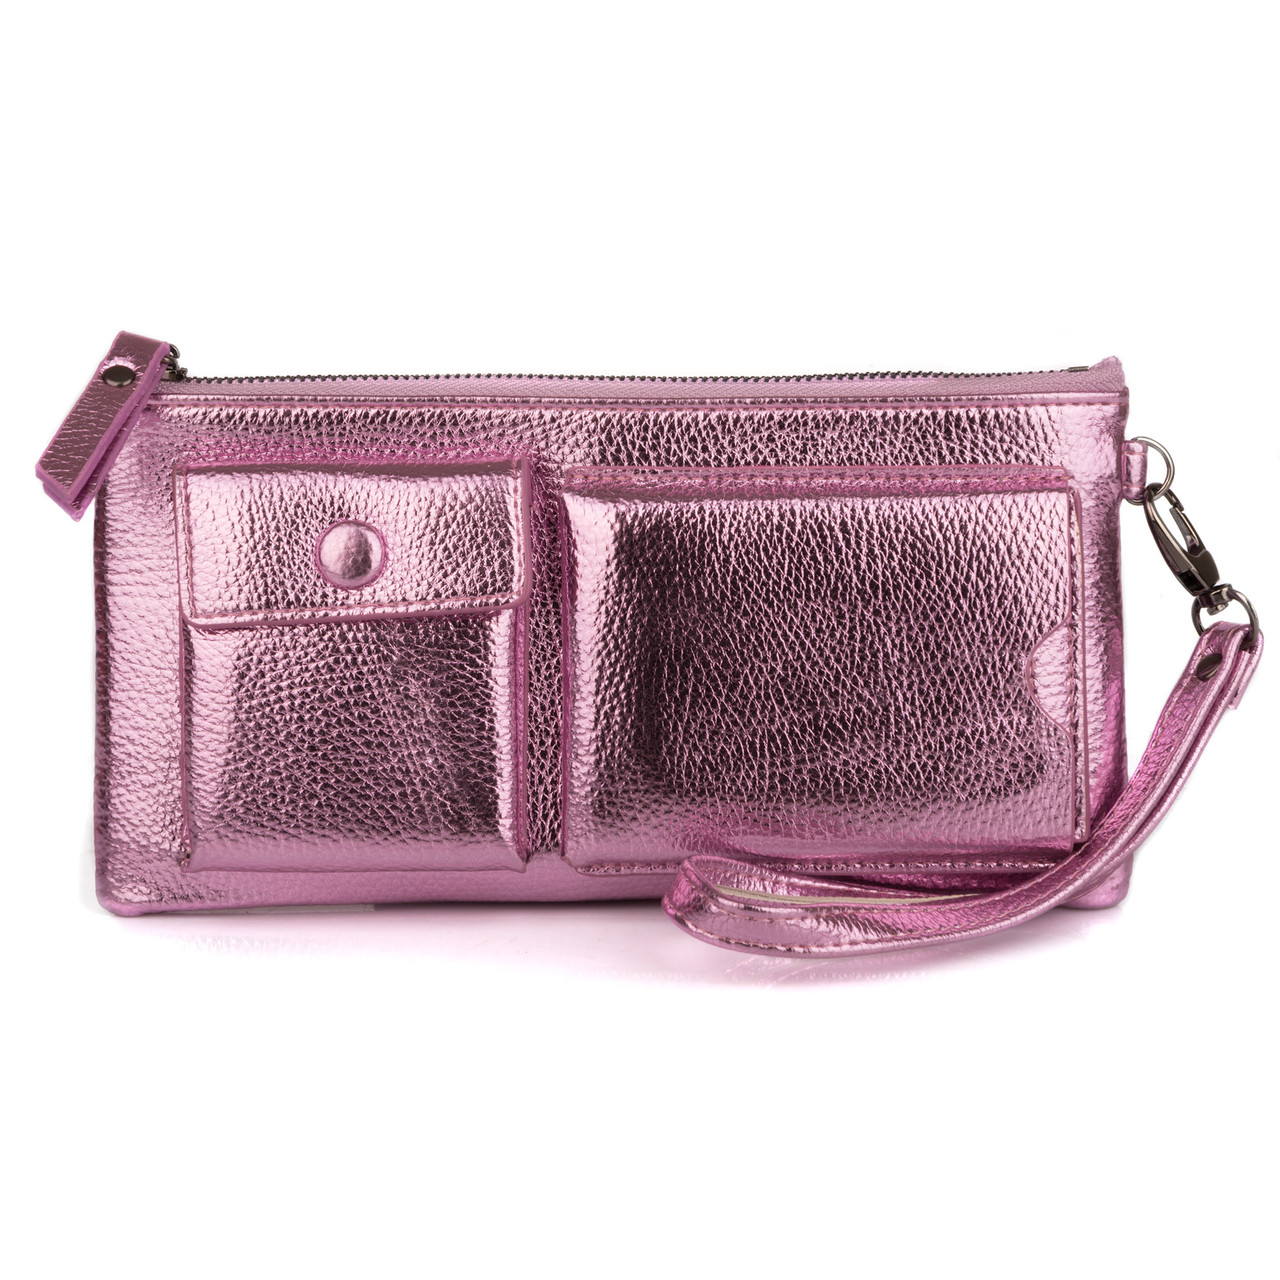 Жіночий оригінальний гаманець Kafa рожевий металік (J-1839), фото 1